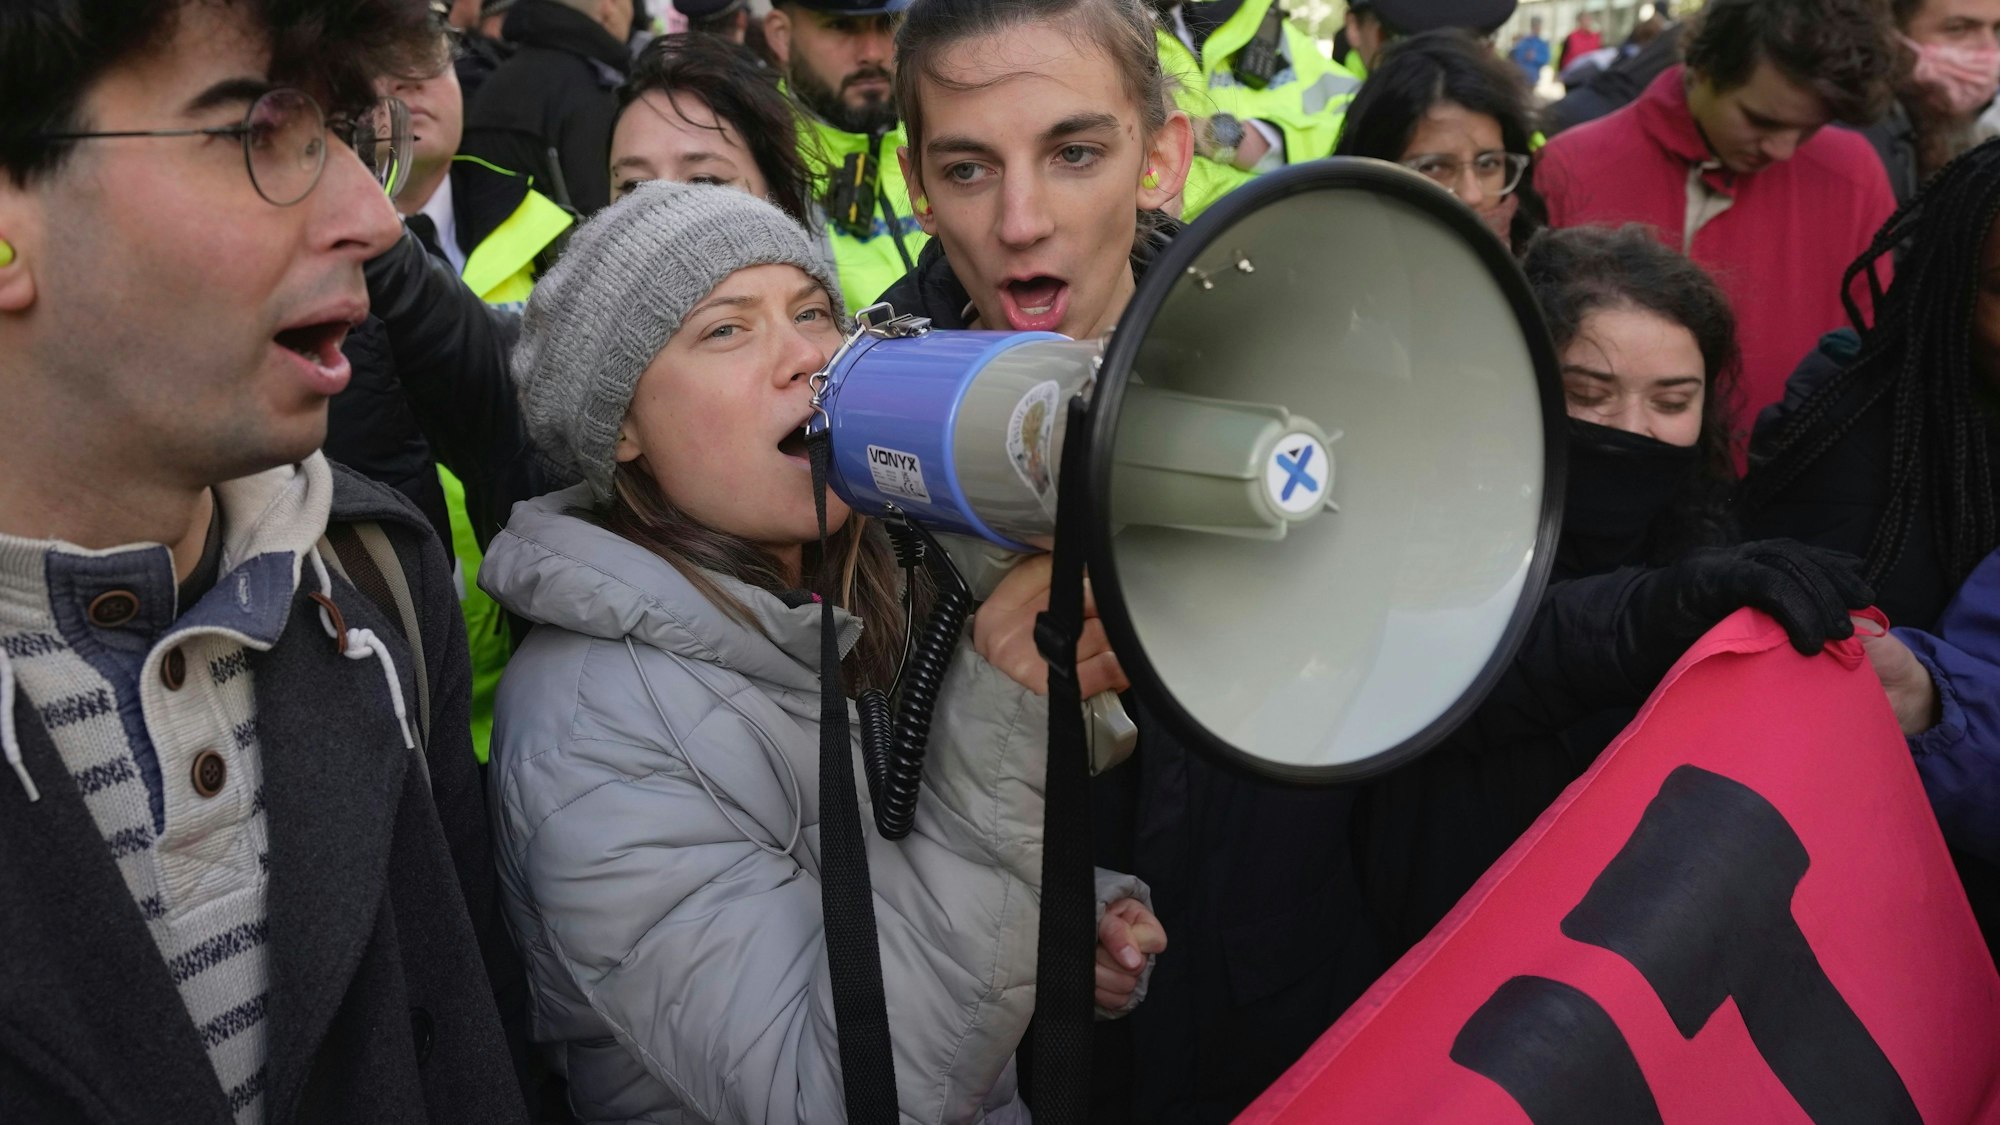 Großbritannien, London: Greta Thunberg, Klimaaktivistin aus Schweden, ruft in ein Megafon während der „Oily Money Out“-Demonstration vor dem Intercontinental Hotel. Gemeinsam mit anderen Klimaaktivisten hat Greta Thunberg in London gegen ein Treffen von Energiemanagern demonstriert.